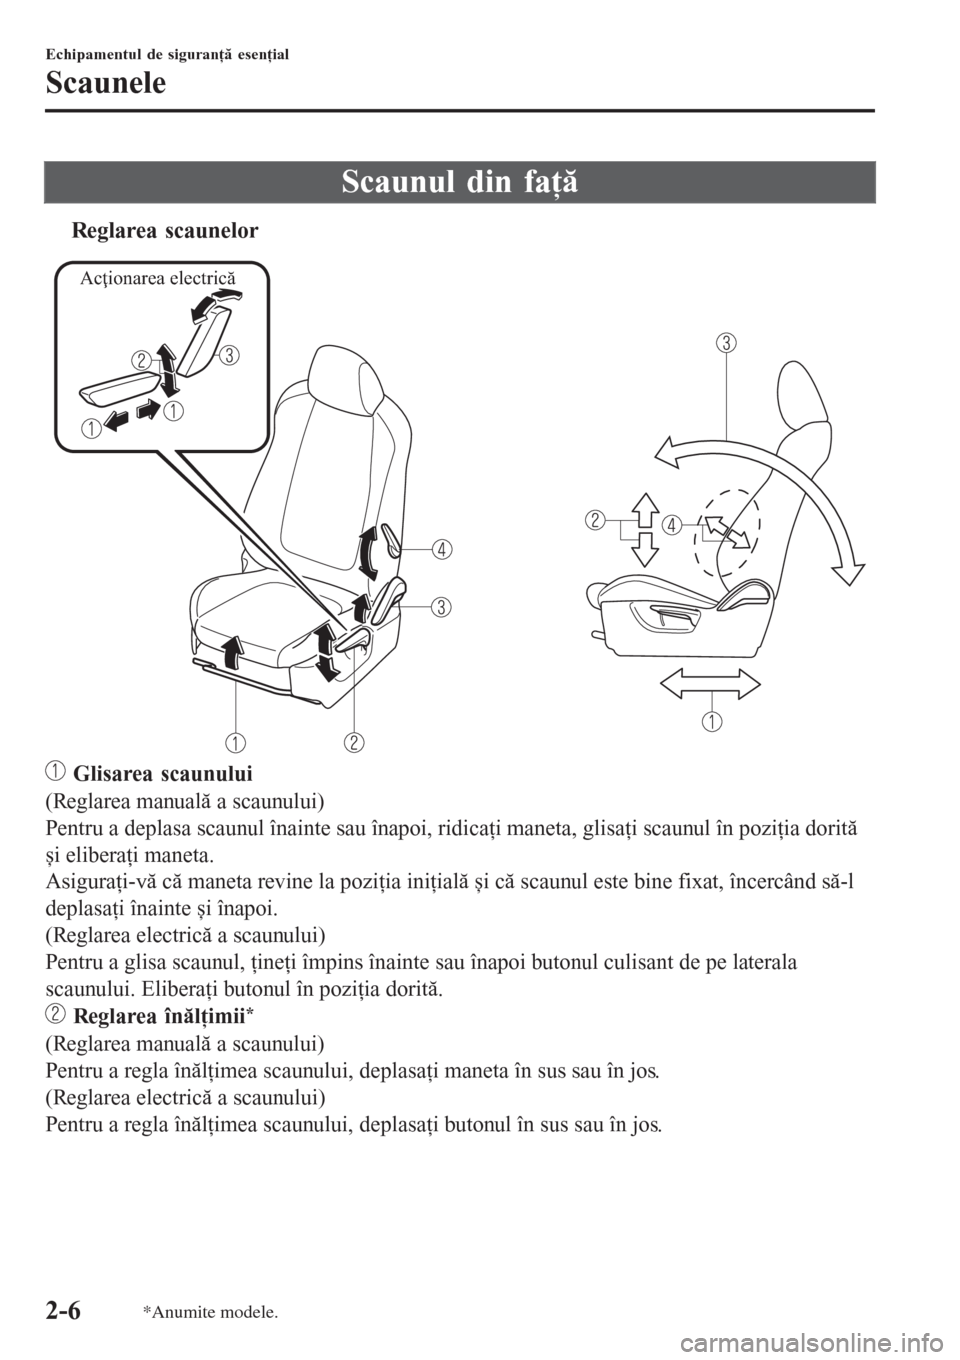 MAZDA MODEL 3 HATCHBACK 2015  Manualul de utilizare (in Romanian) Scaunul din faţă
tReglarea scaunelor
Acţionarea electrică
 Glisarea scaunului
(Reglarea manuală a scaunului)
Pentru a deplasa scaunul înainte sau înapoi, ridicaţi maneta, glisaţi scaunul în 